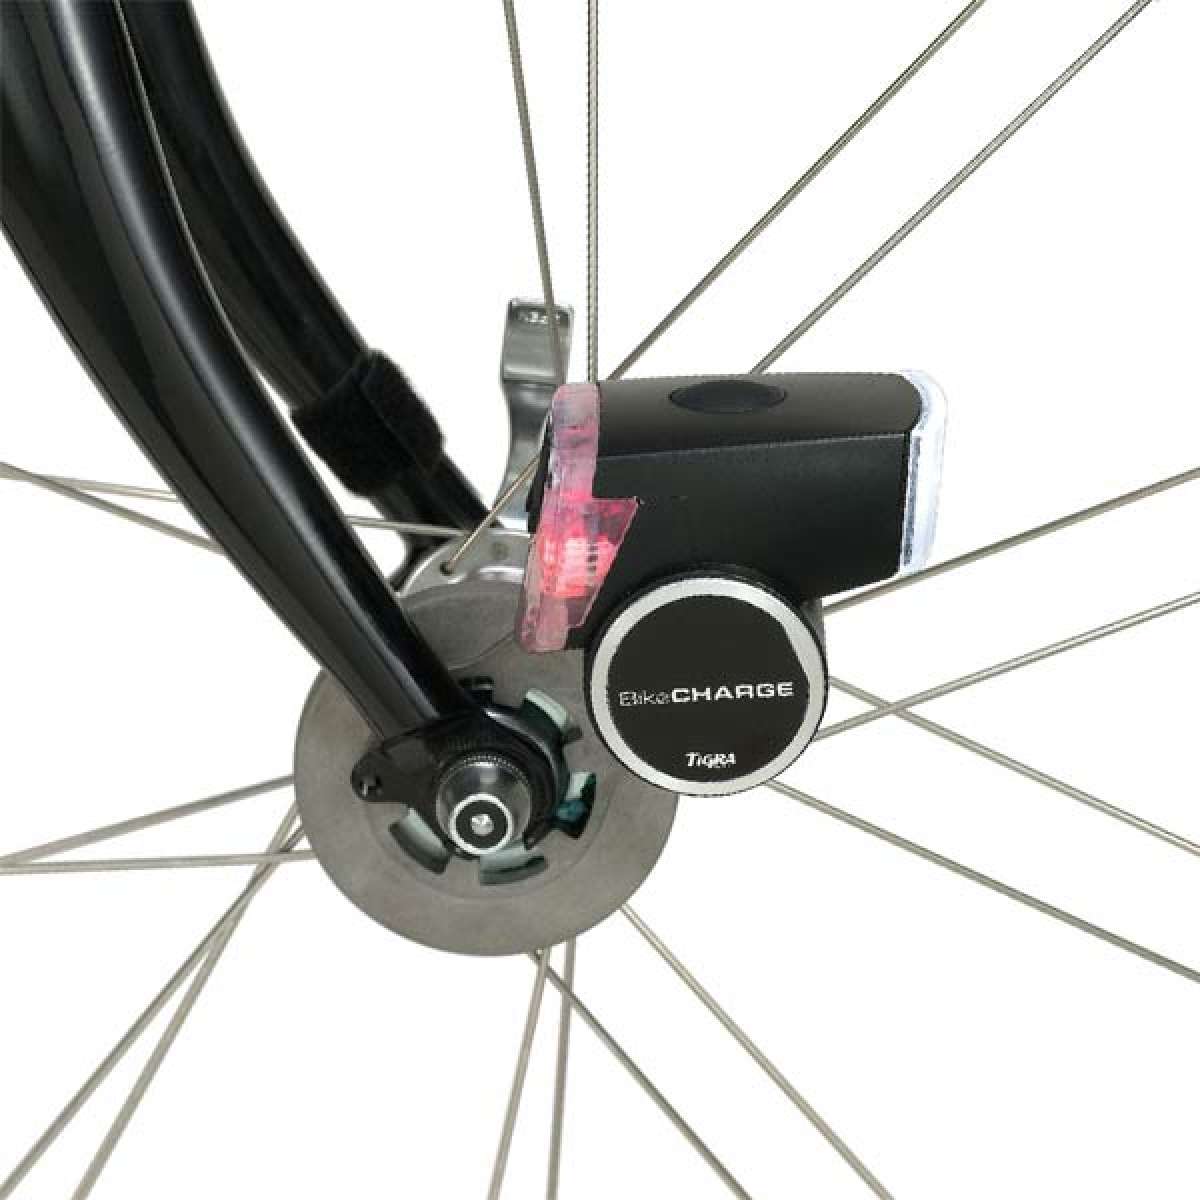 BikeCharge. Una dinamo de última generación para bicicletas con cargador universal USB incluido